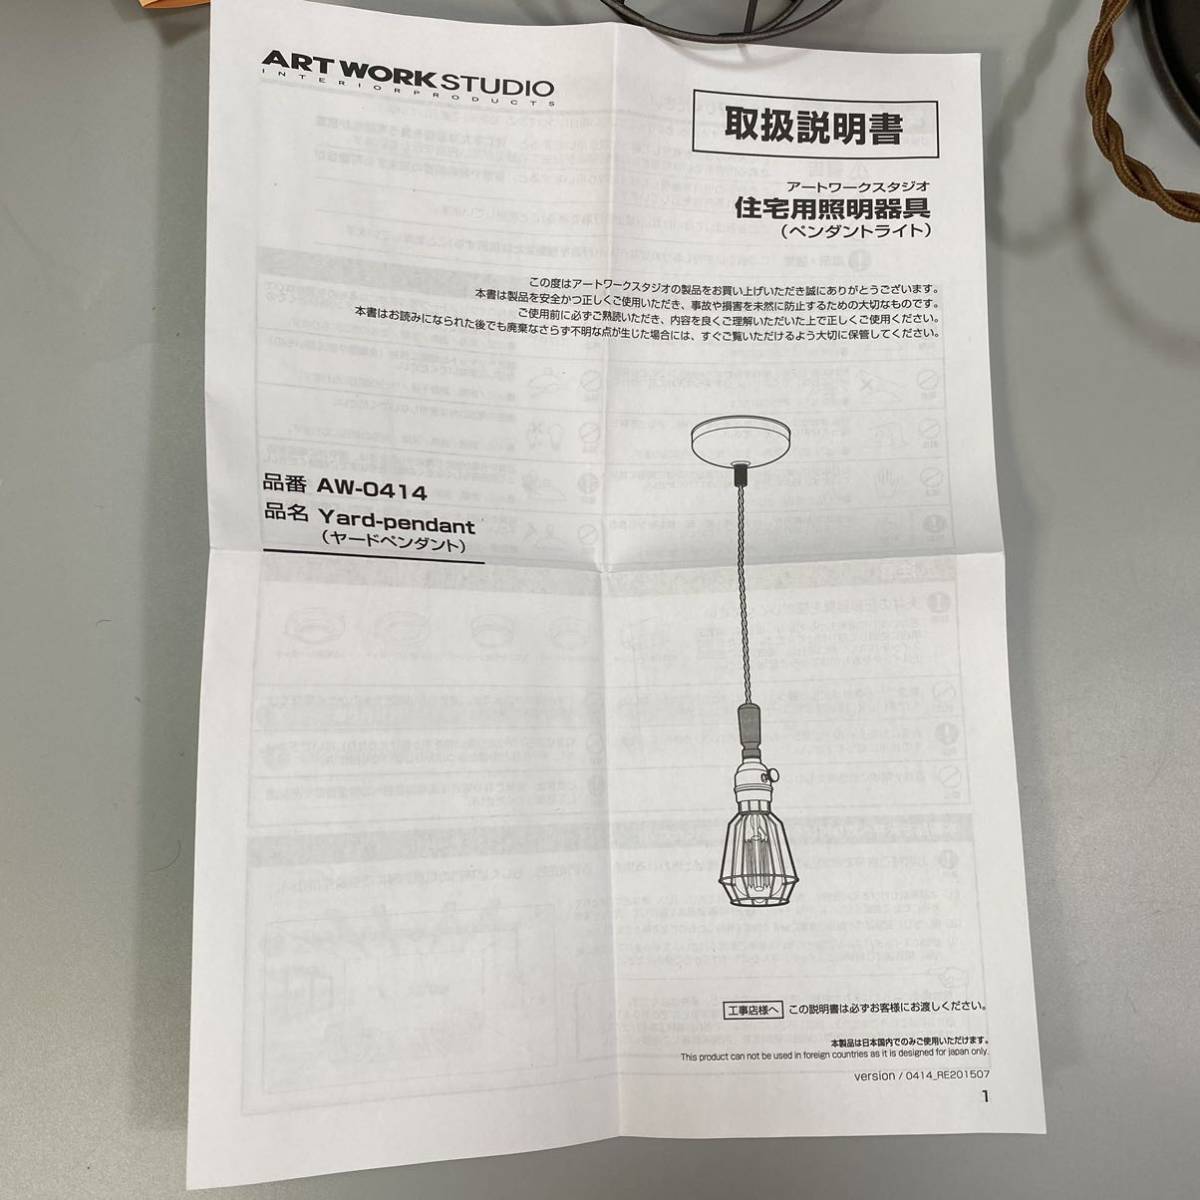 [ не использовался ] ARTWORKSTUDIO подвешивание ниже ярд подвеска Yard-pendant AW-0414 из дерева 1 лампа E26 40W роторный переключатель LED соответствует освещение 